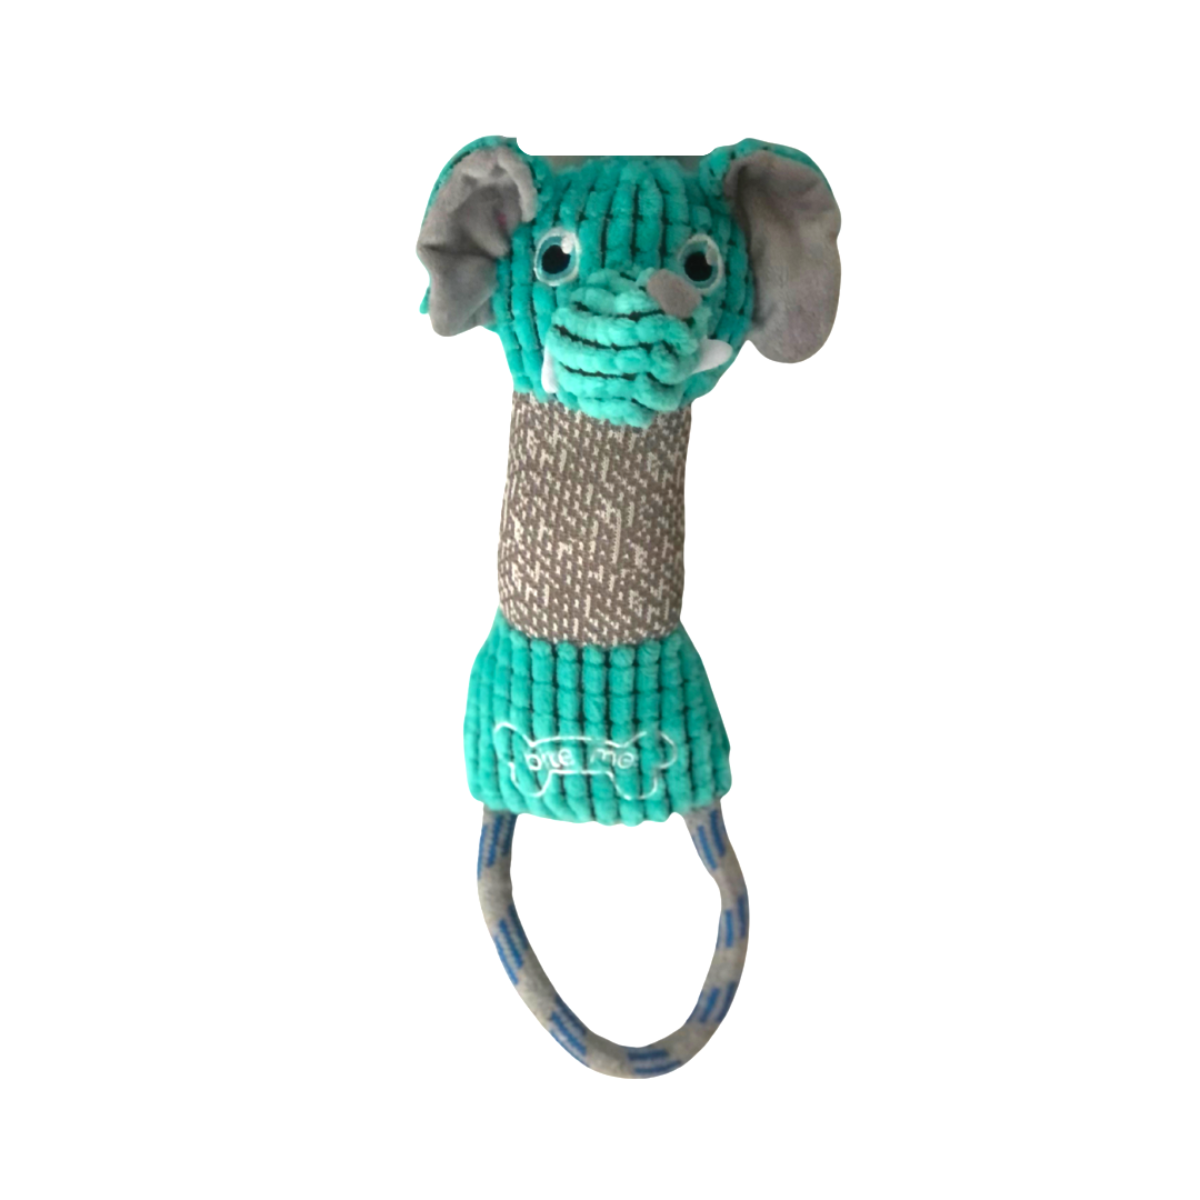 Animal Rope Tug Dog Toy - Limited